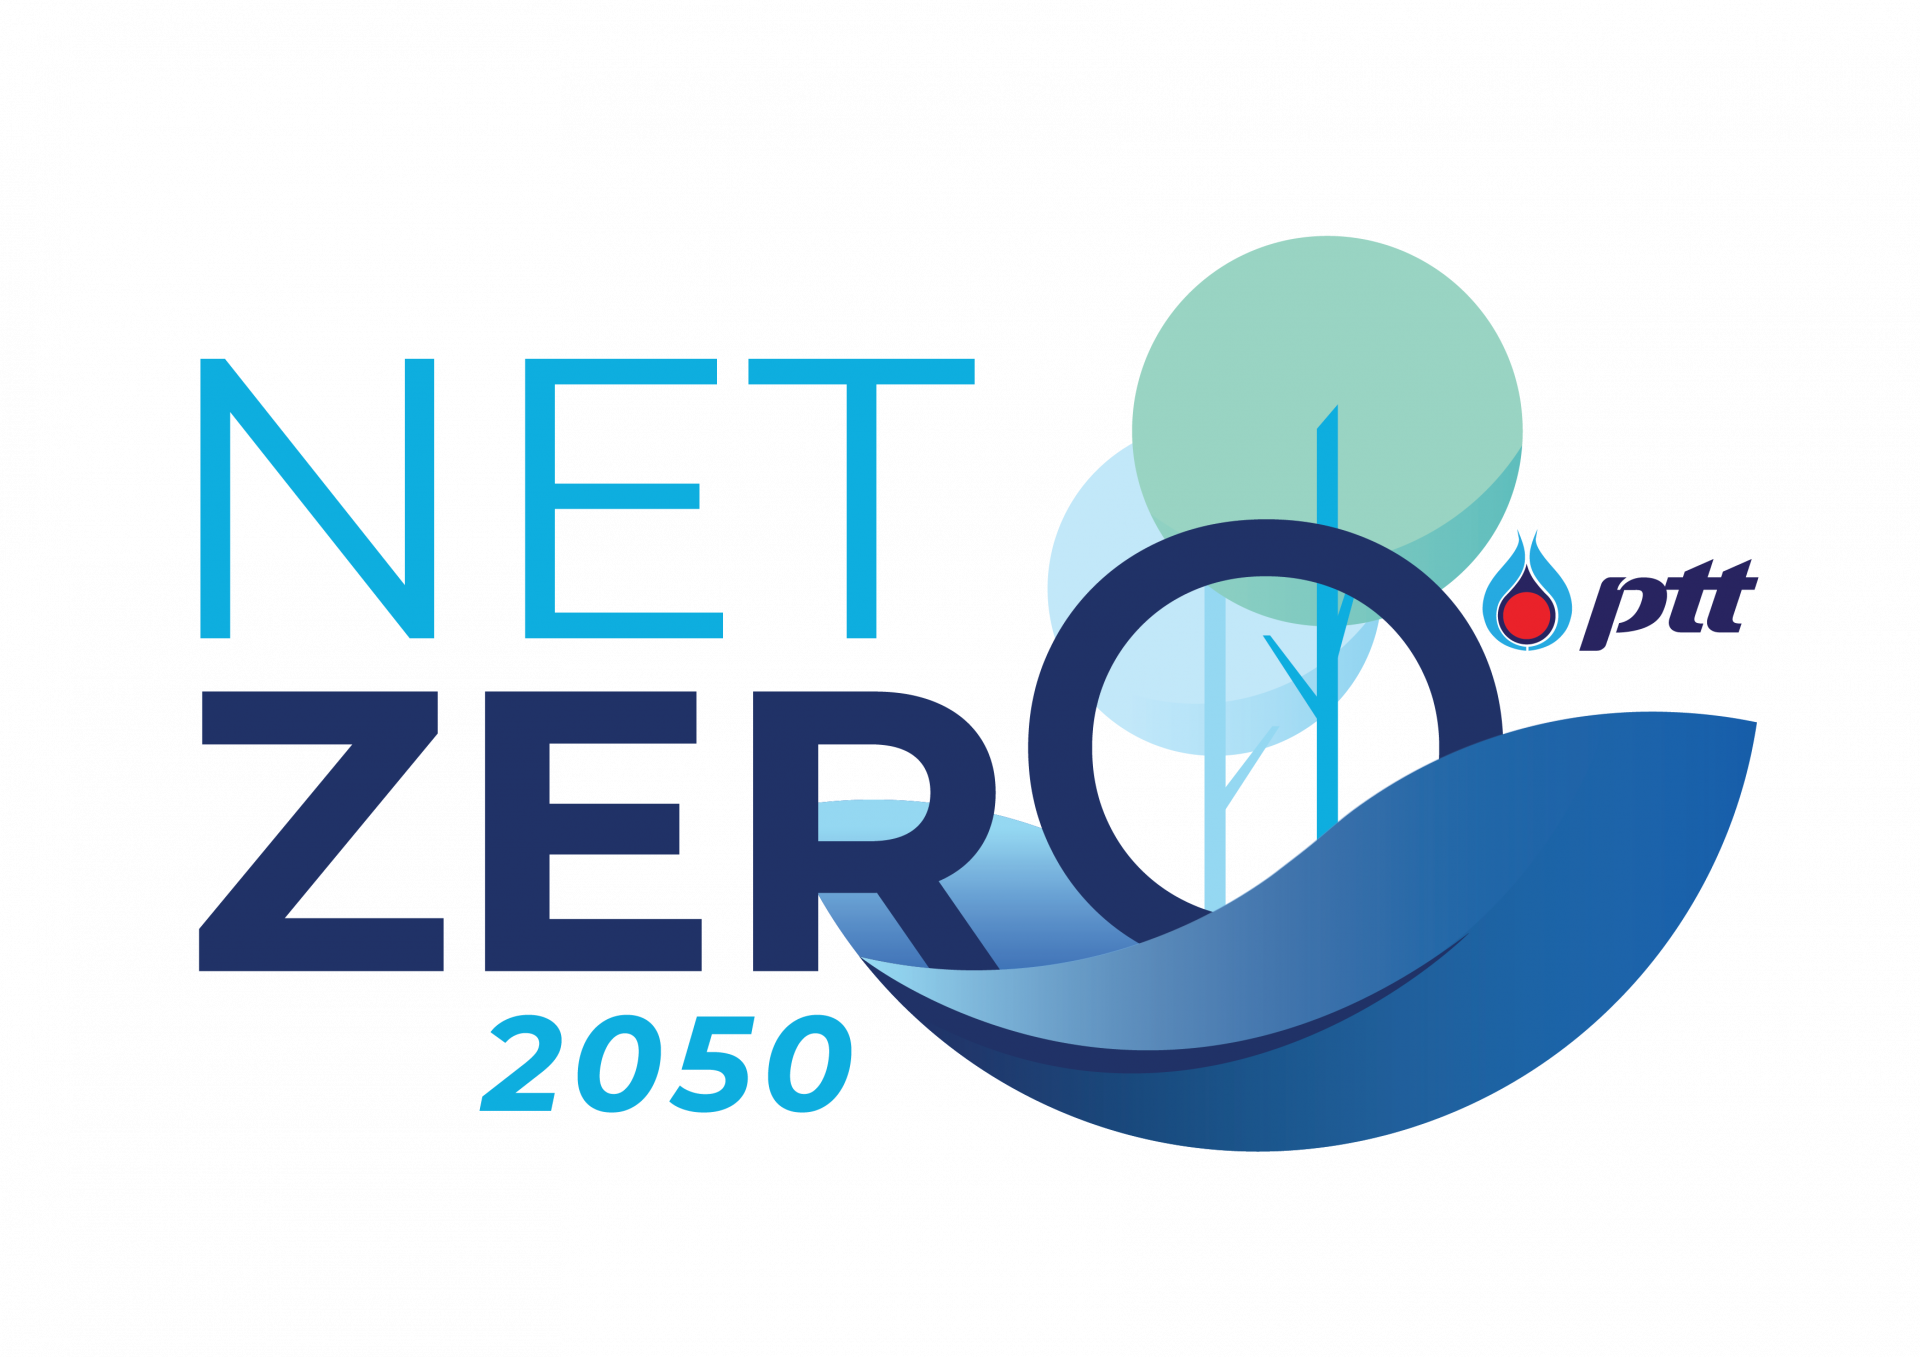 ปตท. ประกาศเป้า Net Zero ของกลุ่มภายในปี 2050 สร้างสังคมคาร์บอนต่ำเพื่อคนไทยอย่างยั่งยืน